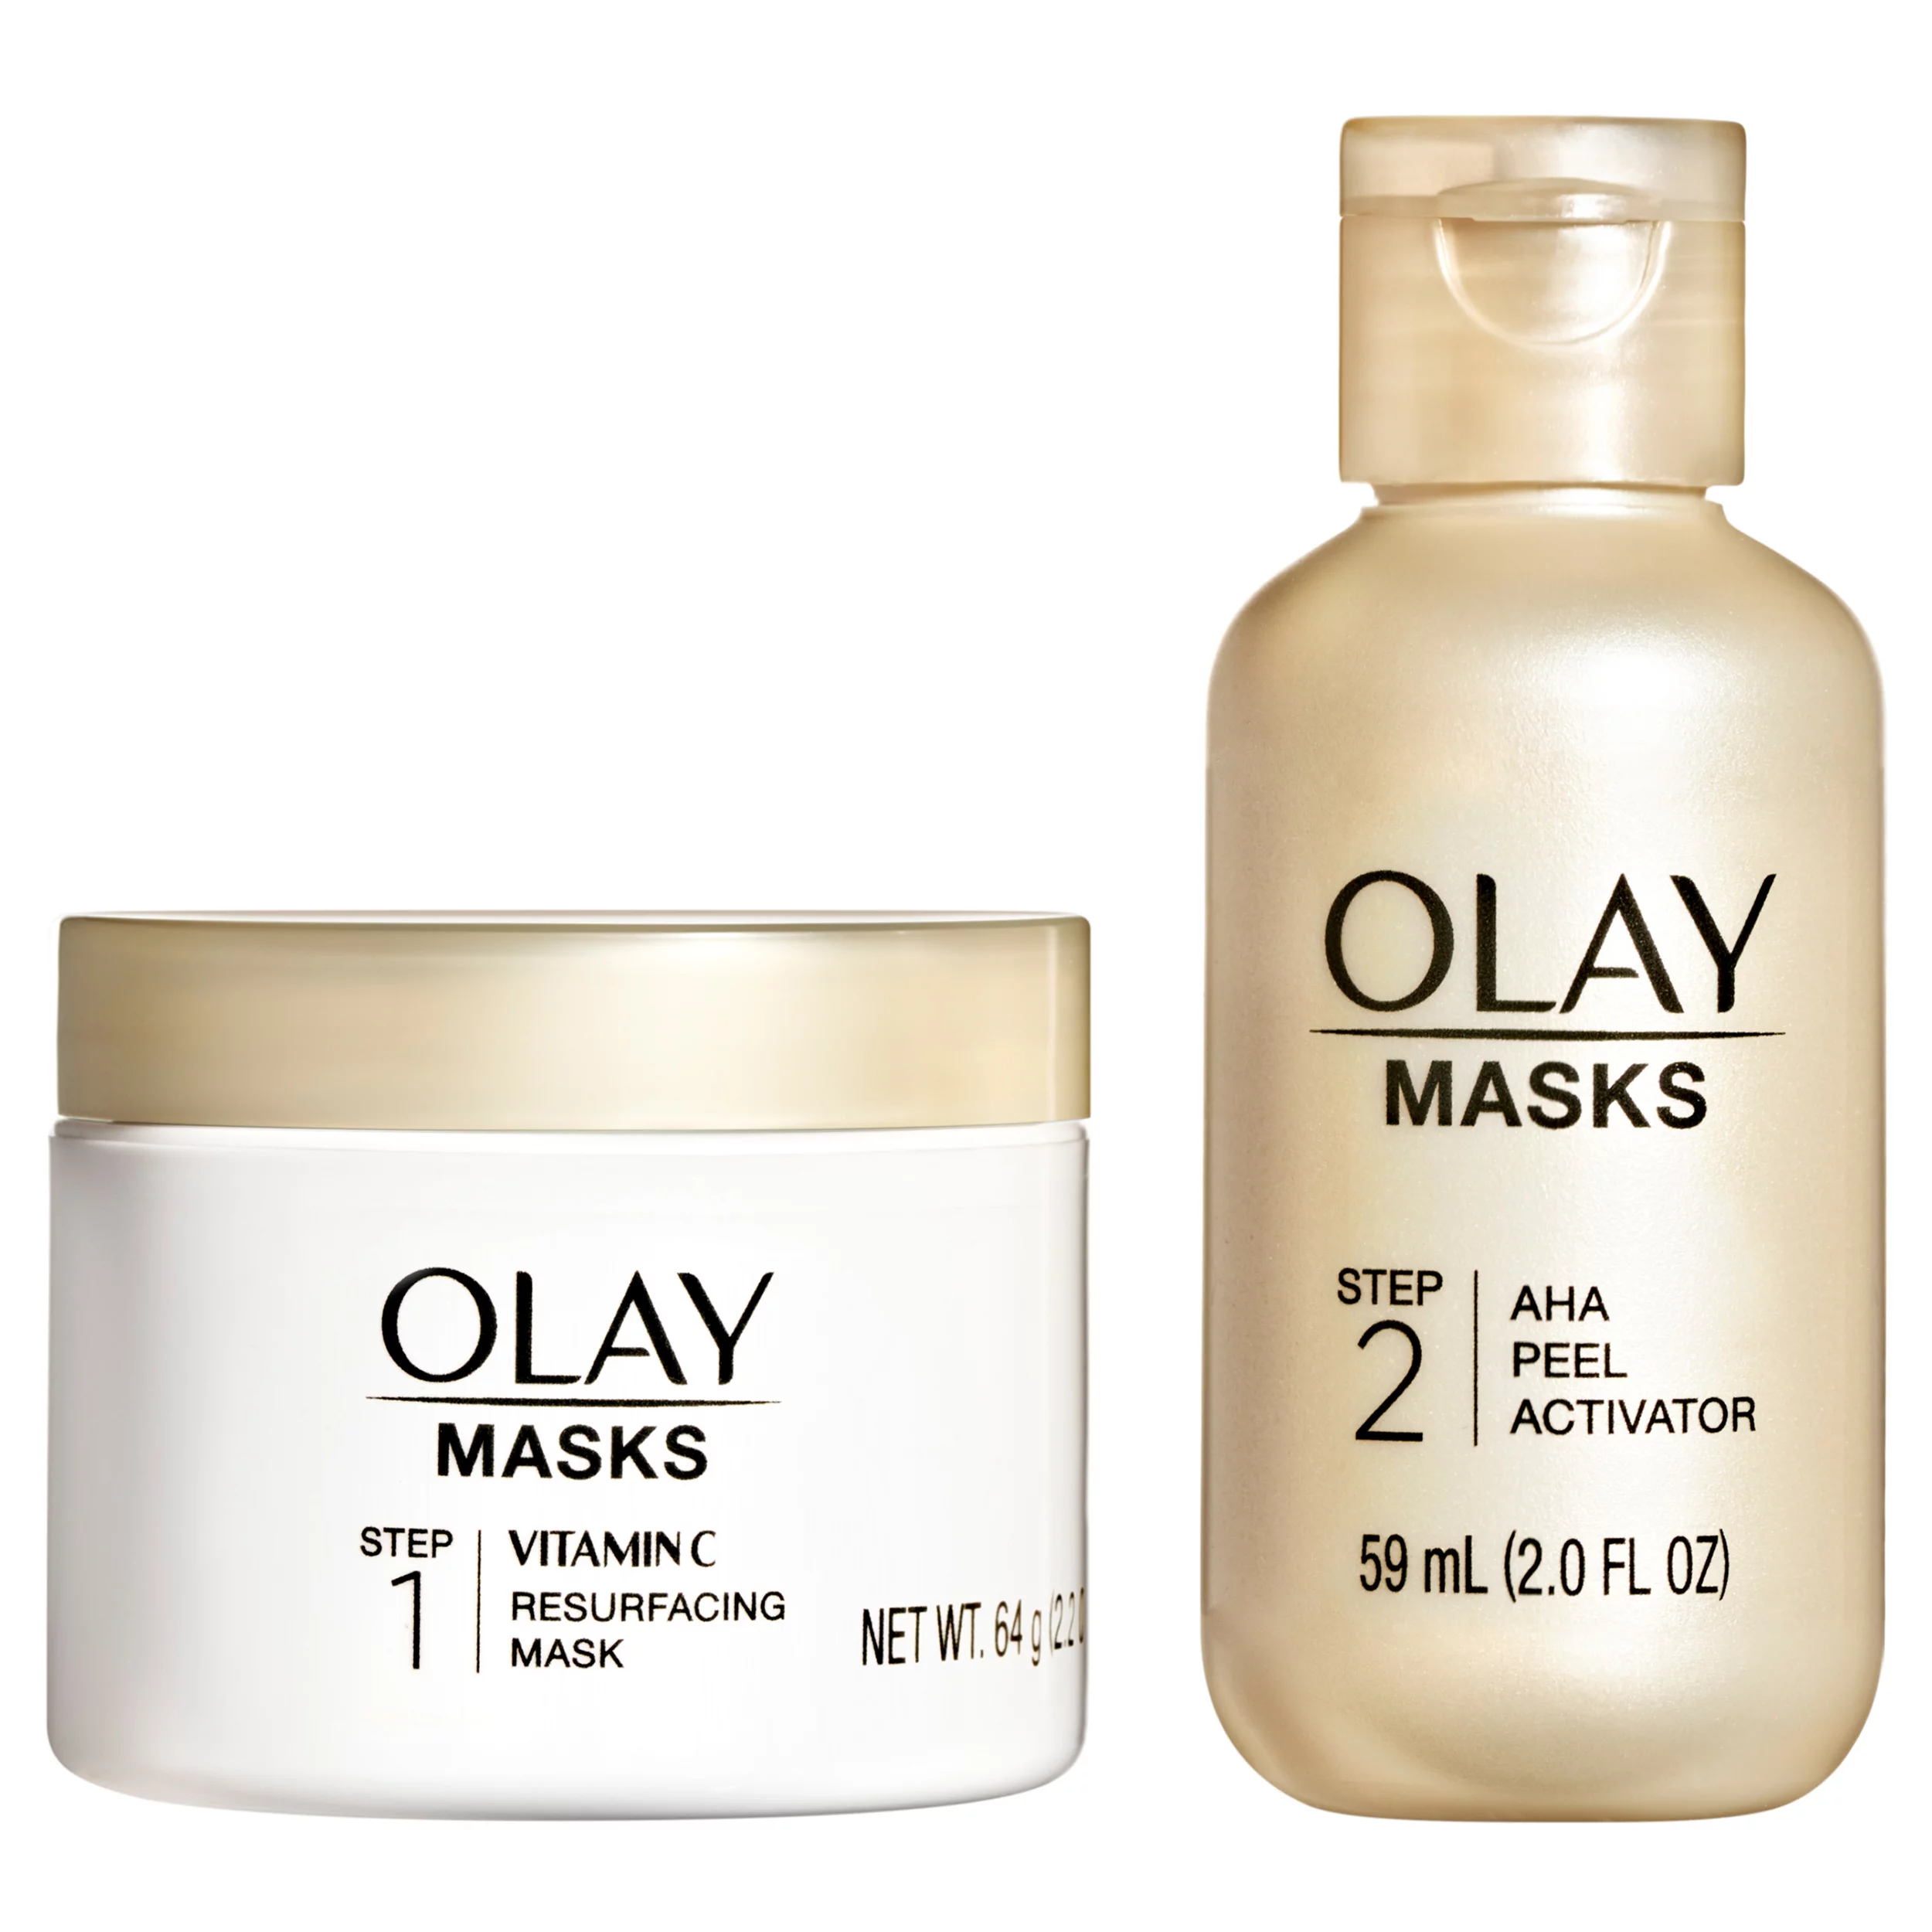 Olay Masks Vitamin C + AHA Resurfacing Peel